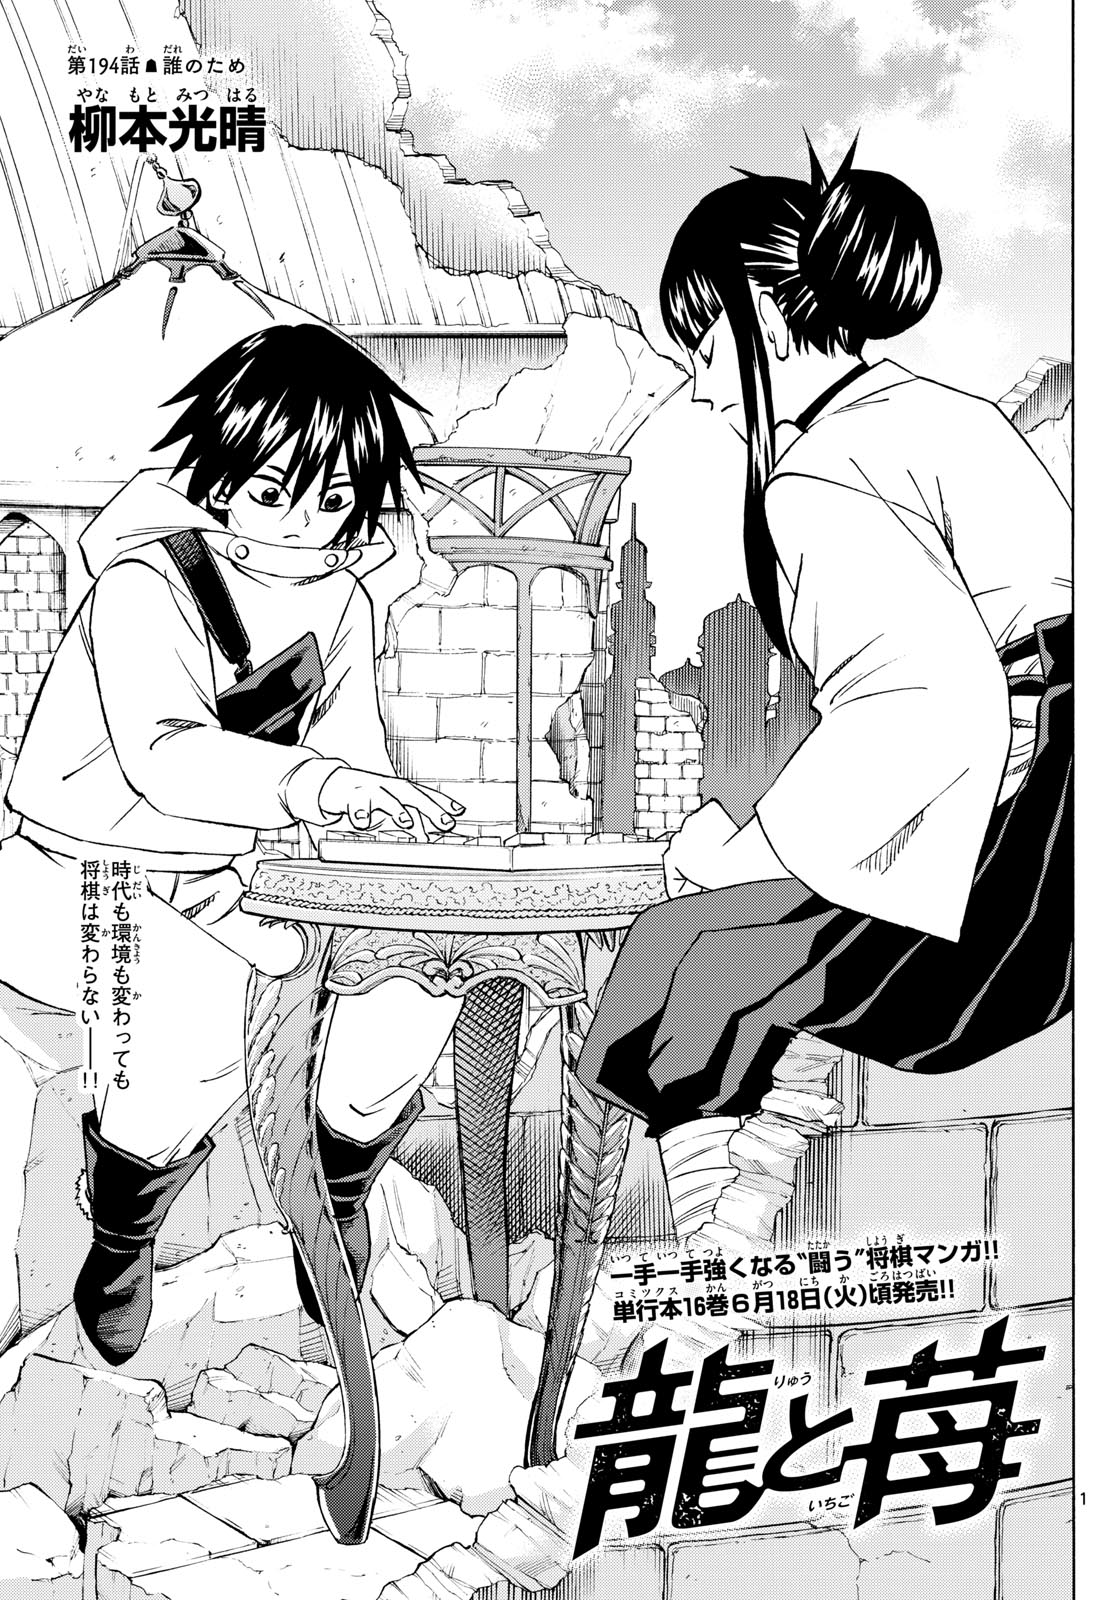 Tatsu to Ichigo - Chapter 194 - Page 1